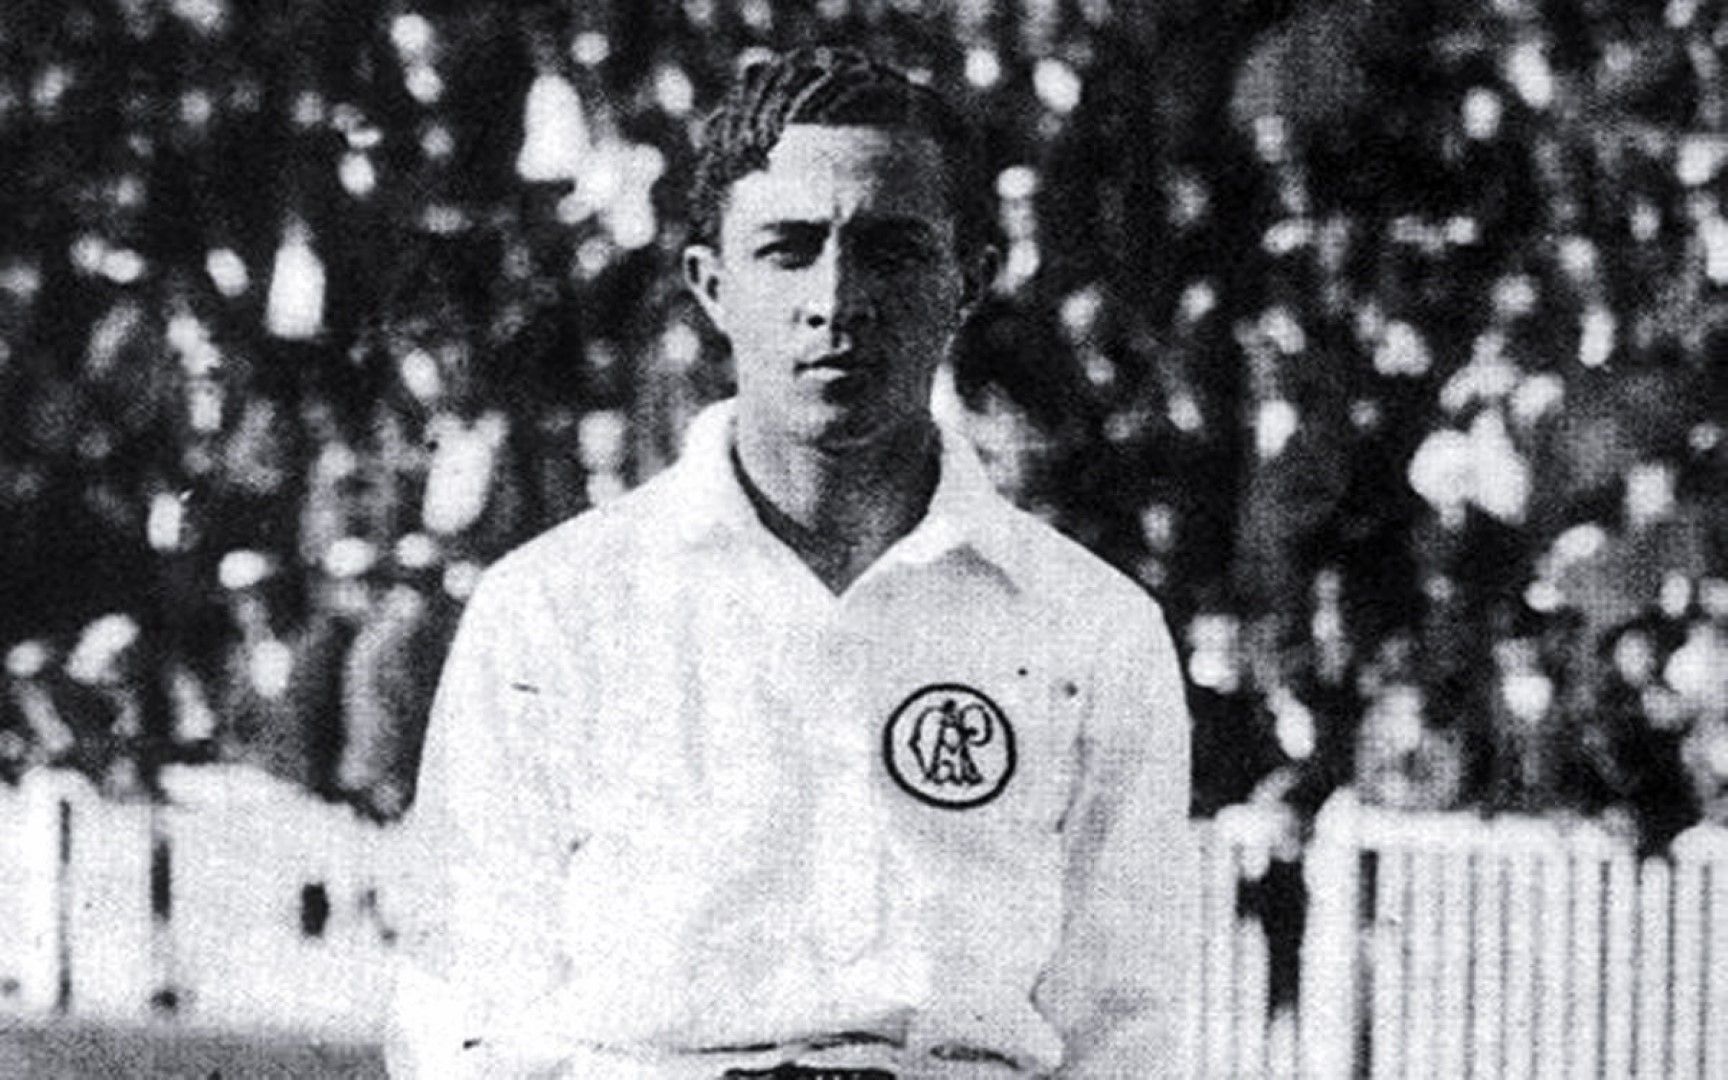 11.Артур Френедрайх - първата звезда на Бразилия, както е известен. Наричат го Тигъра и е първият бразилски нападател с тъмен цвят на кожата (мулат), който се отказва чак на 43 години през 1935-а. Фриденрайх има 557 гола според официалните статистики, макар в Бразилия да твърдят, че са всъщност 1329!